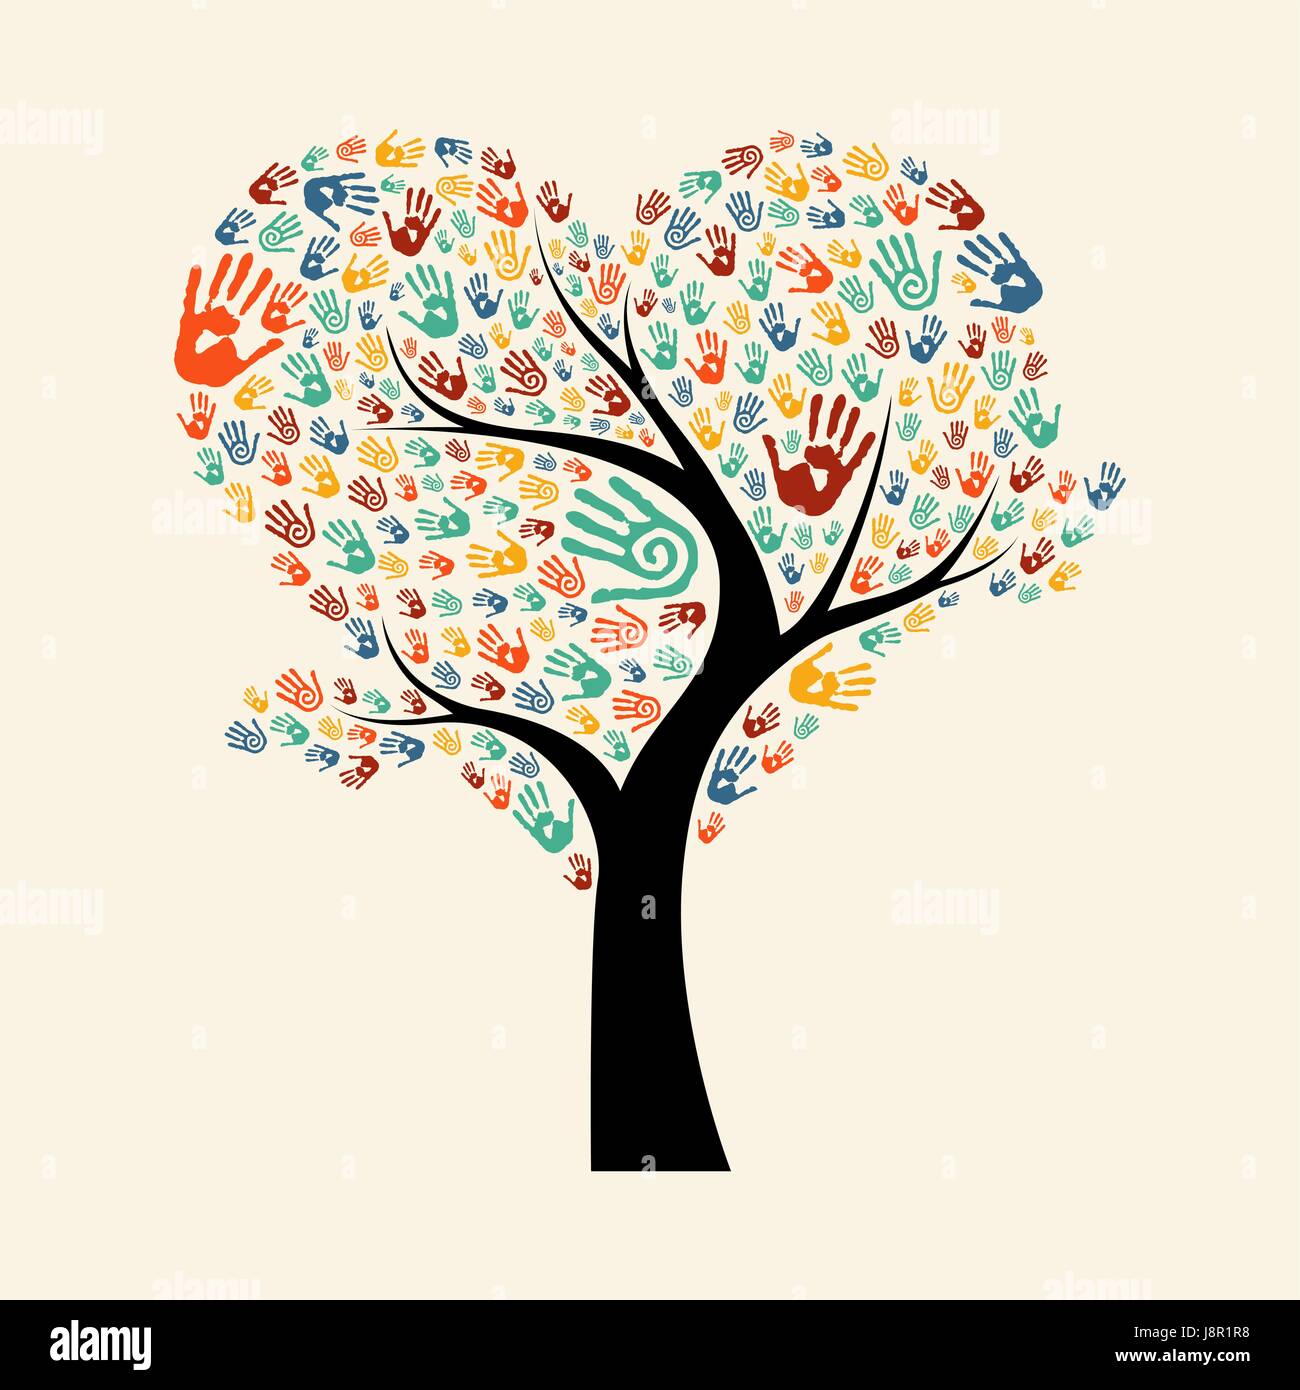 Arborescence constituée de couleurs diverses impressions à la main en forme de coeur. Communauté aide concept illustration. Vecteur EPS10. Illustration de Vecteur